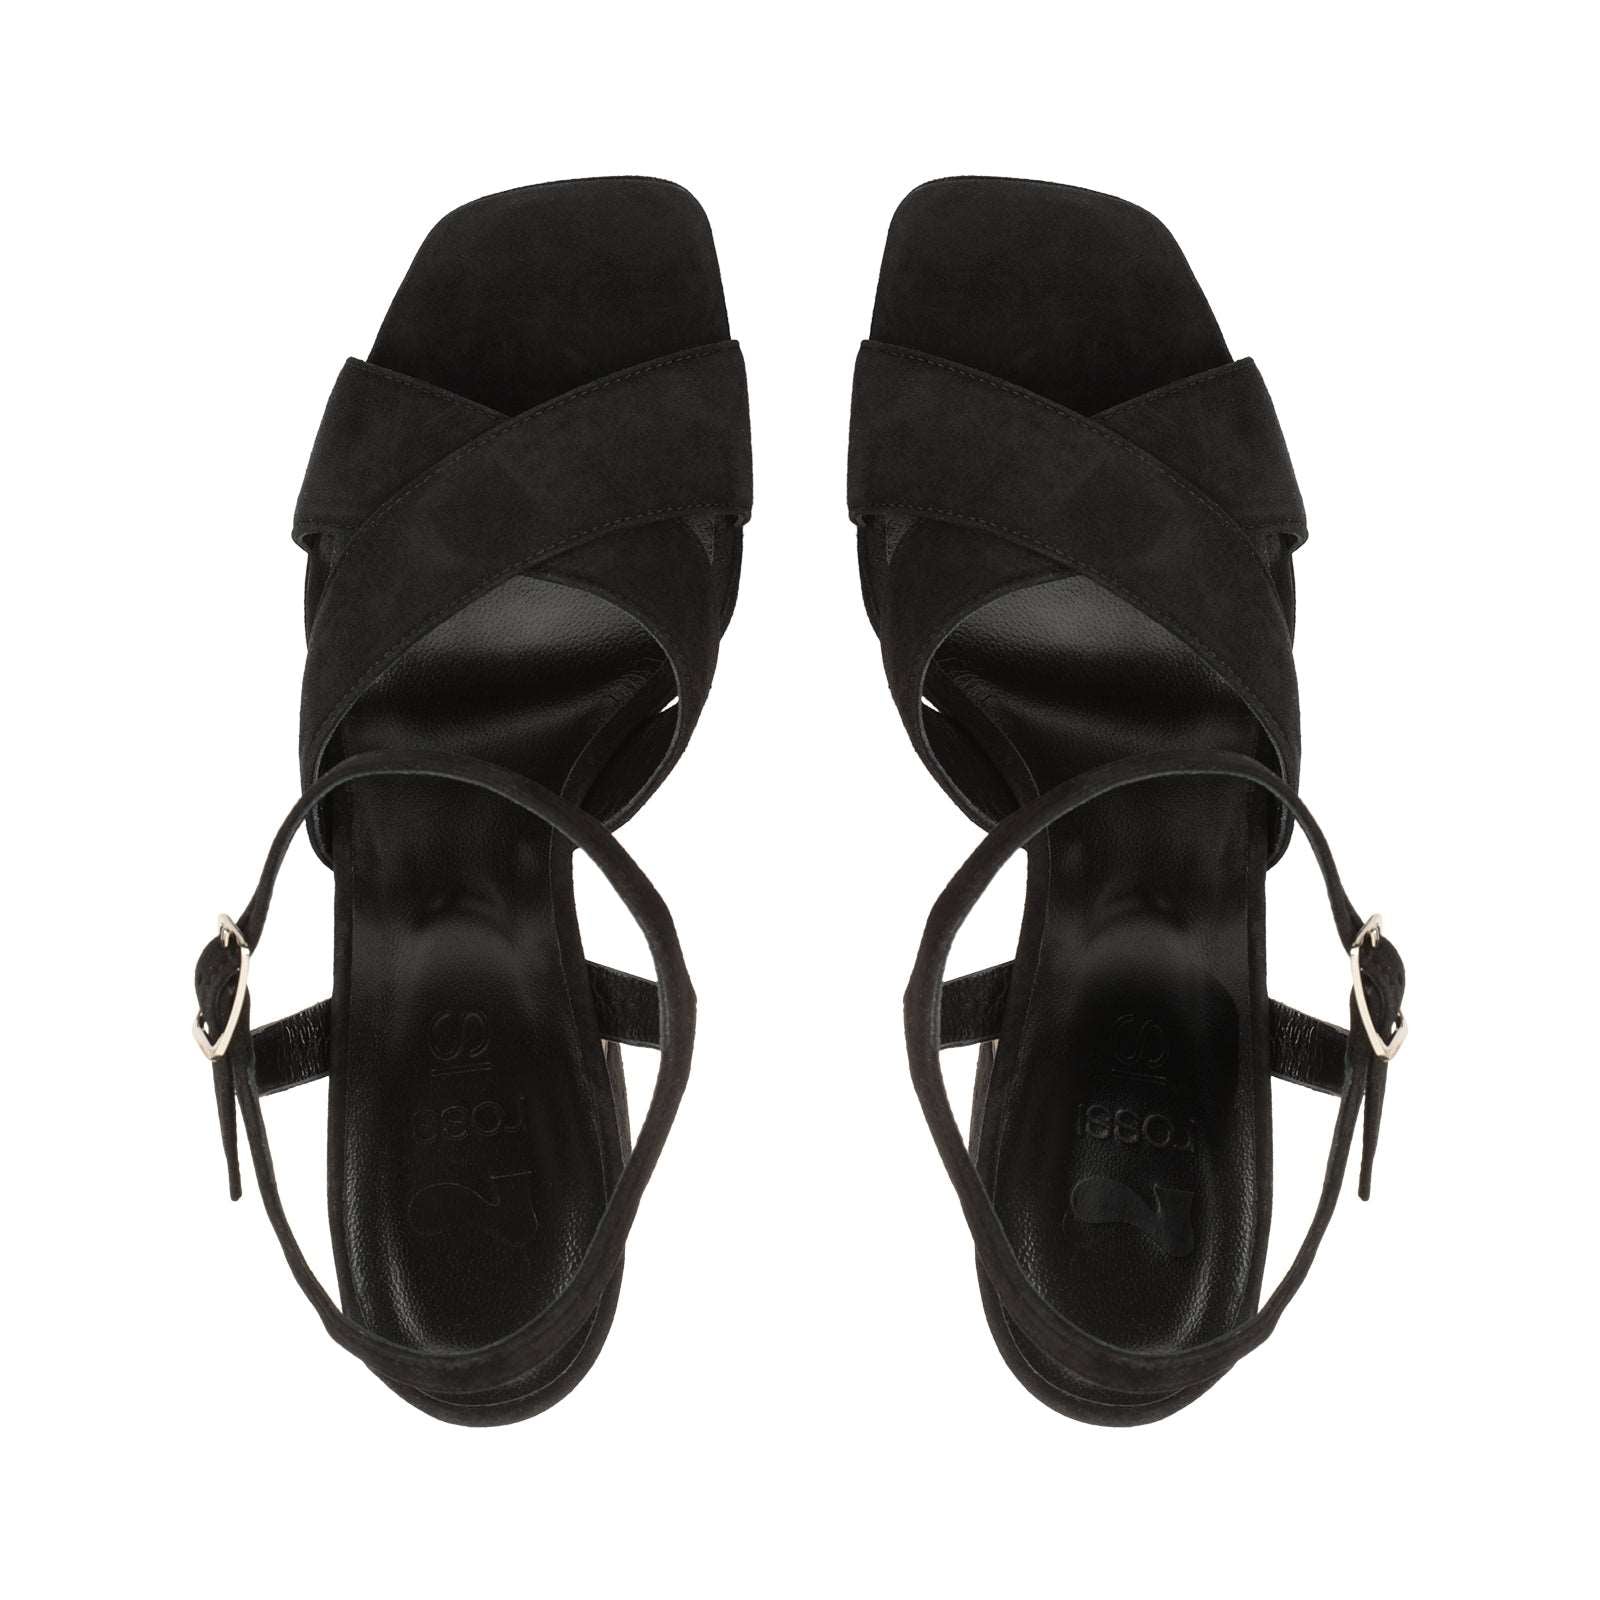 SI ROSSI Sandal Heel|A93780MCAM33 Black